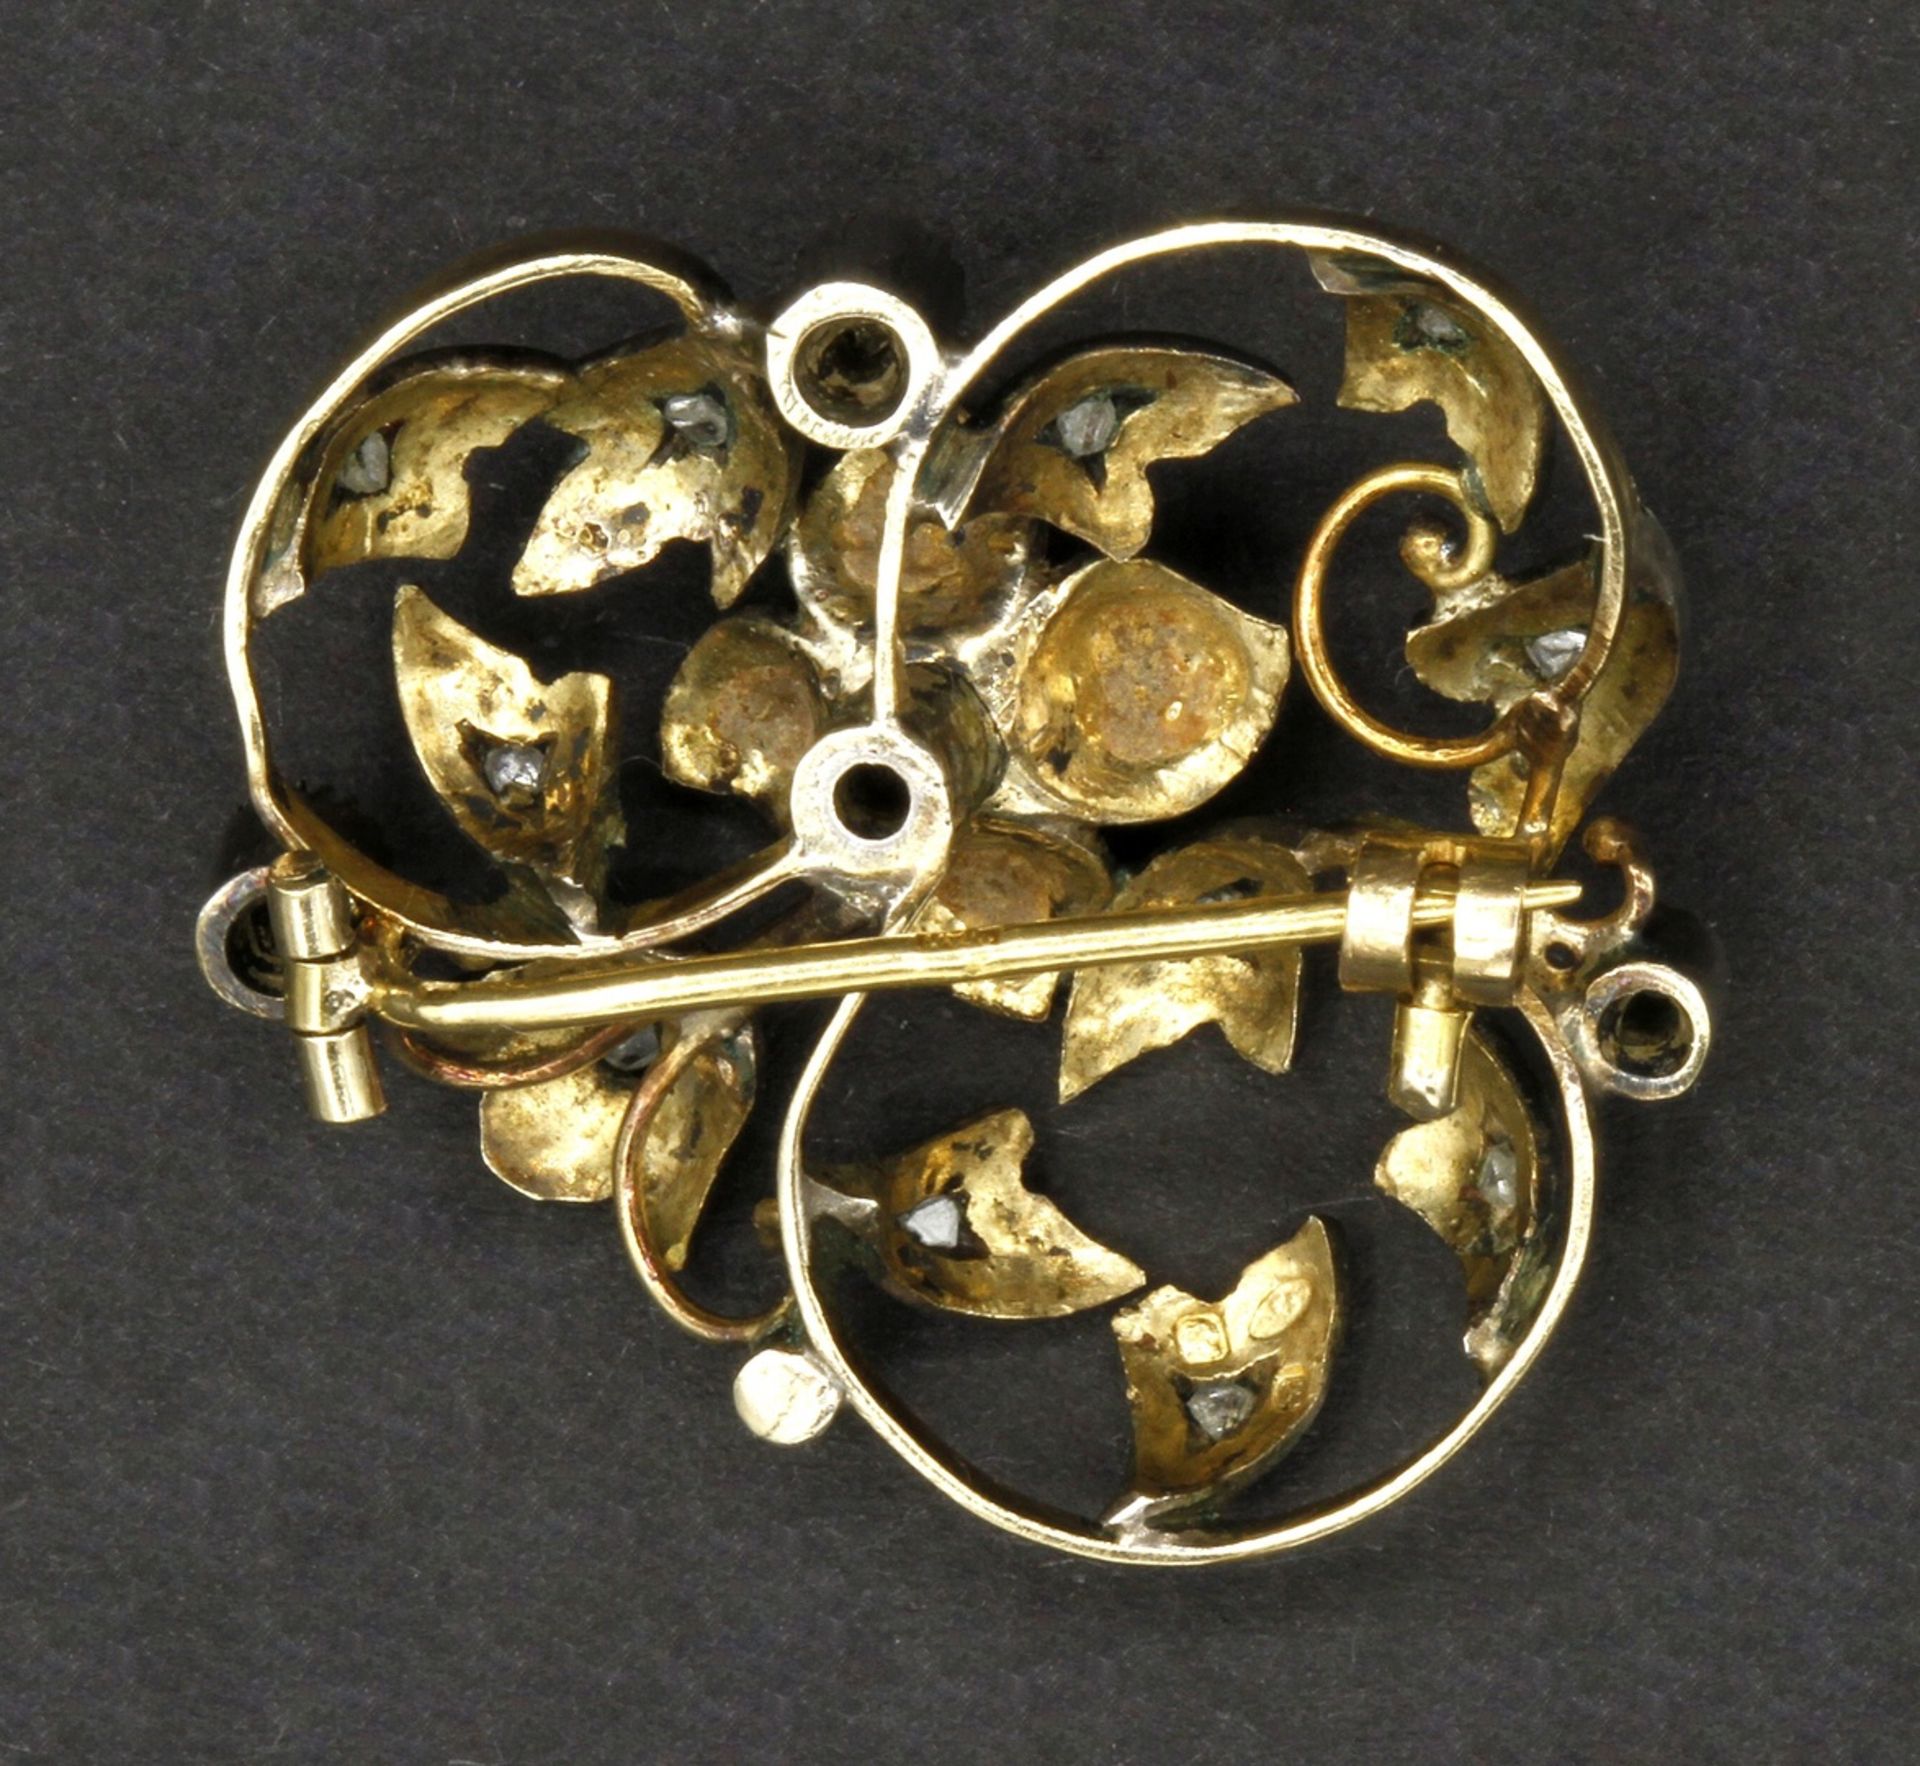 Jugendstil Brosche mit Perle und Diamantsplittern585/- Gelbgold (geprüft) mit Silber-Schauseite, - Image 2 of 2